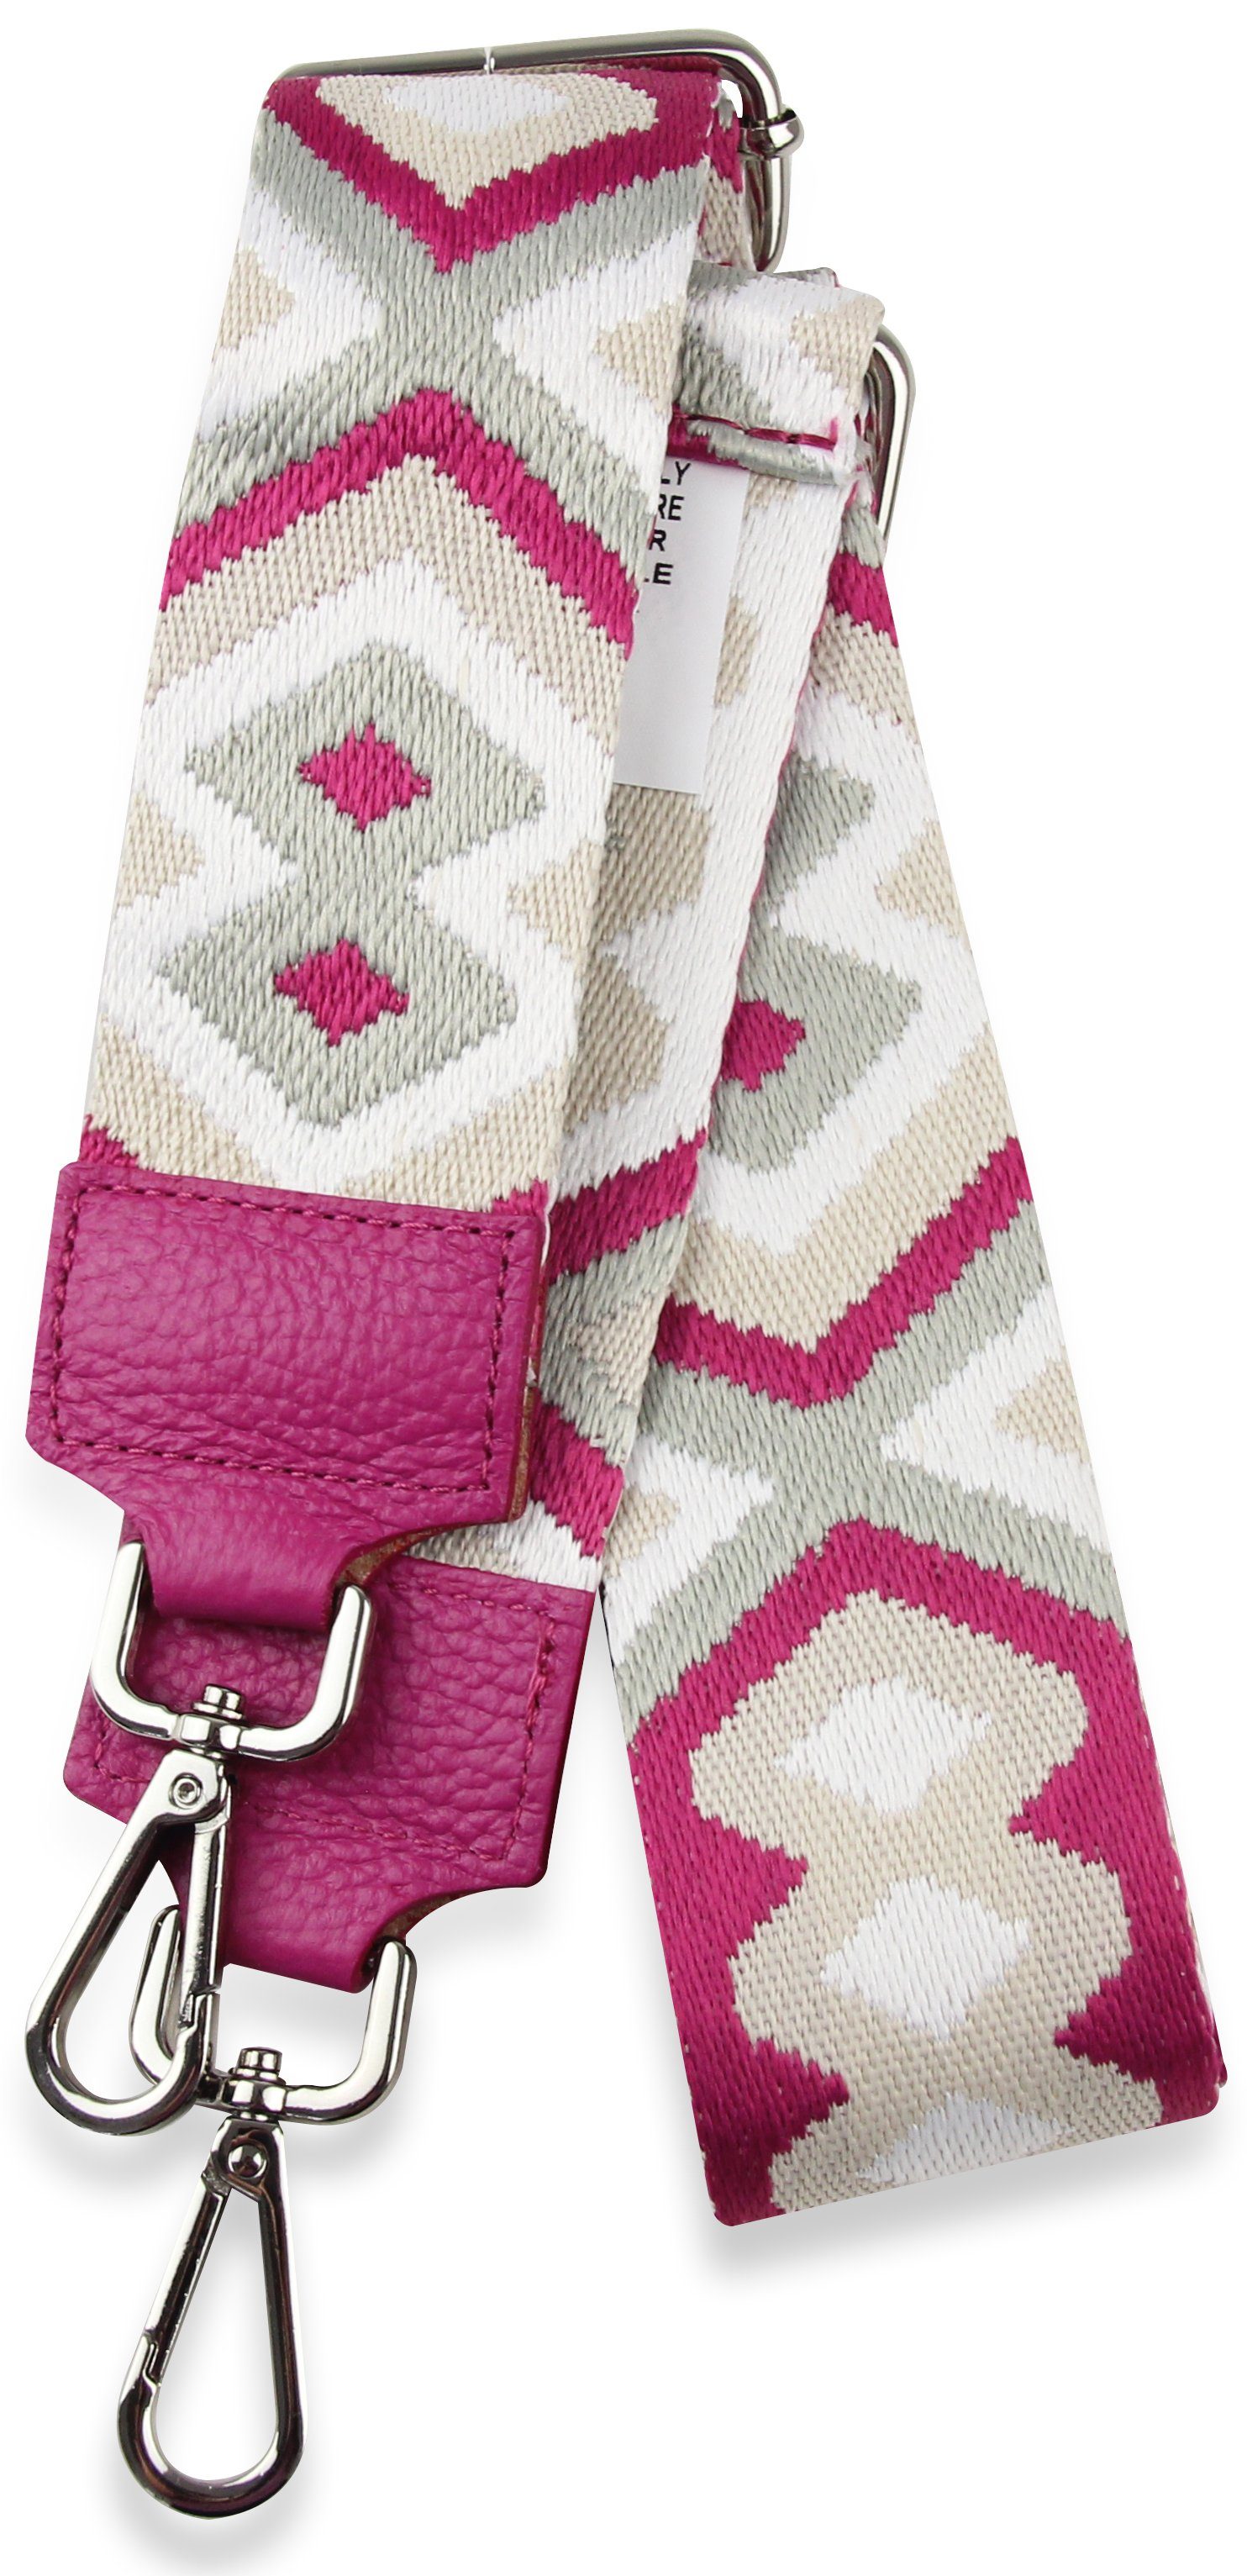 Frentree Schulterriemen MADE IN ITALY, Muster: Bunt für verstellbarer Gurt, Schultergurt Pink Taschen, 5cm breiter